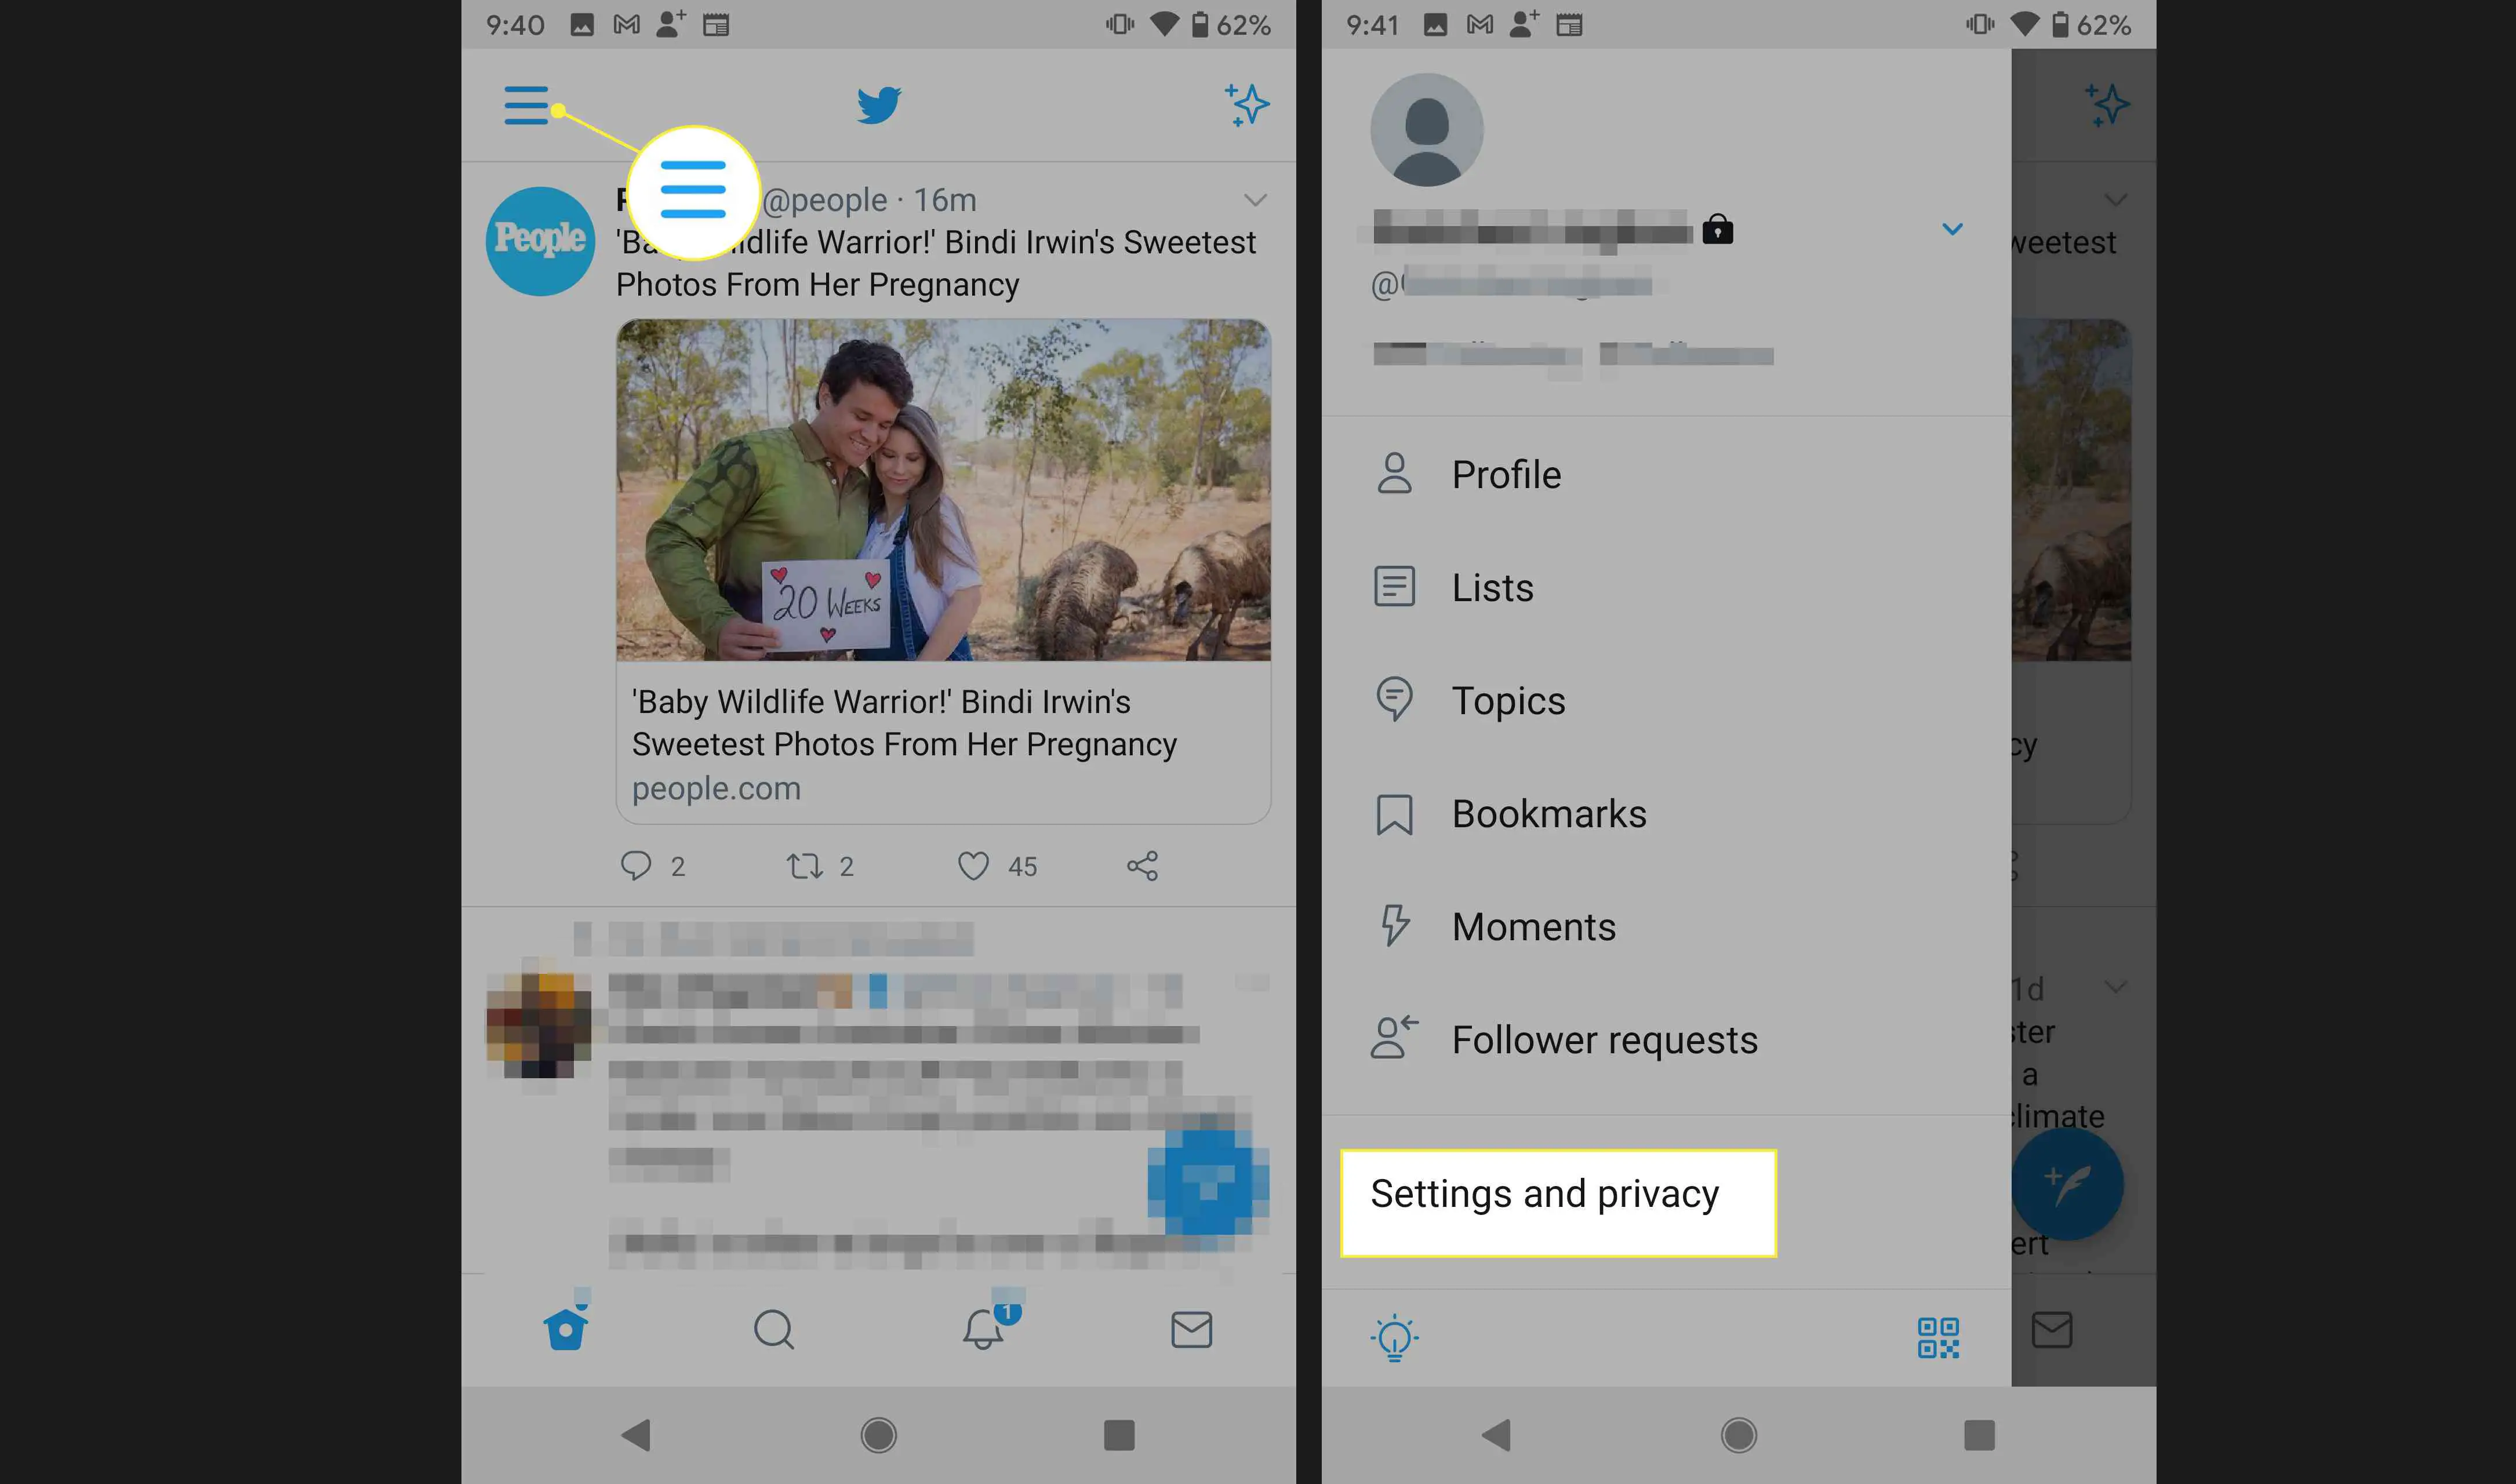 Aplicativo do Twitter para Android com conta, configurações e privacidade destacadas